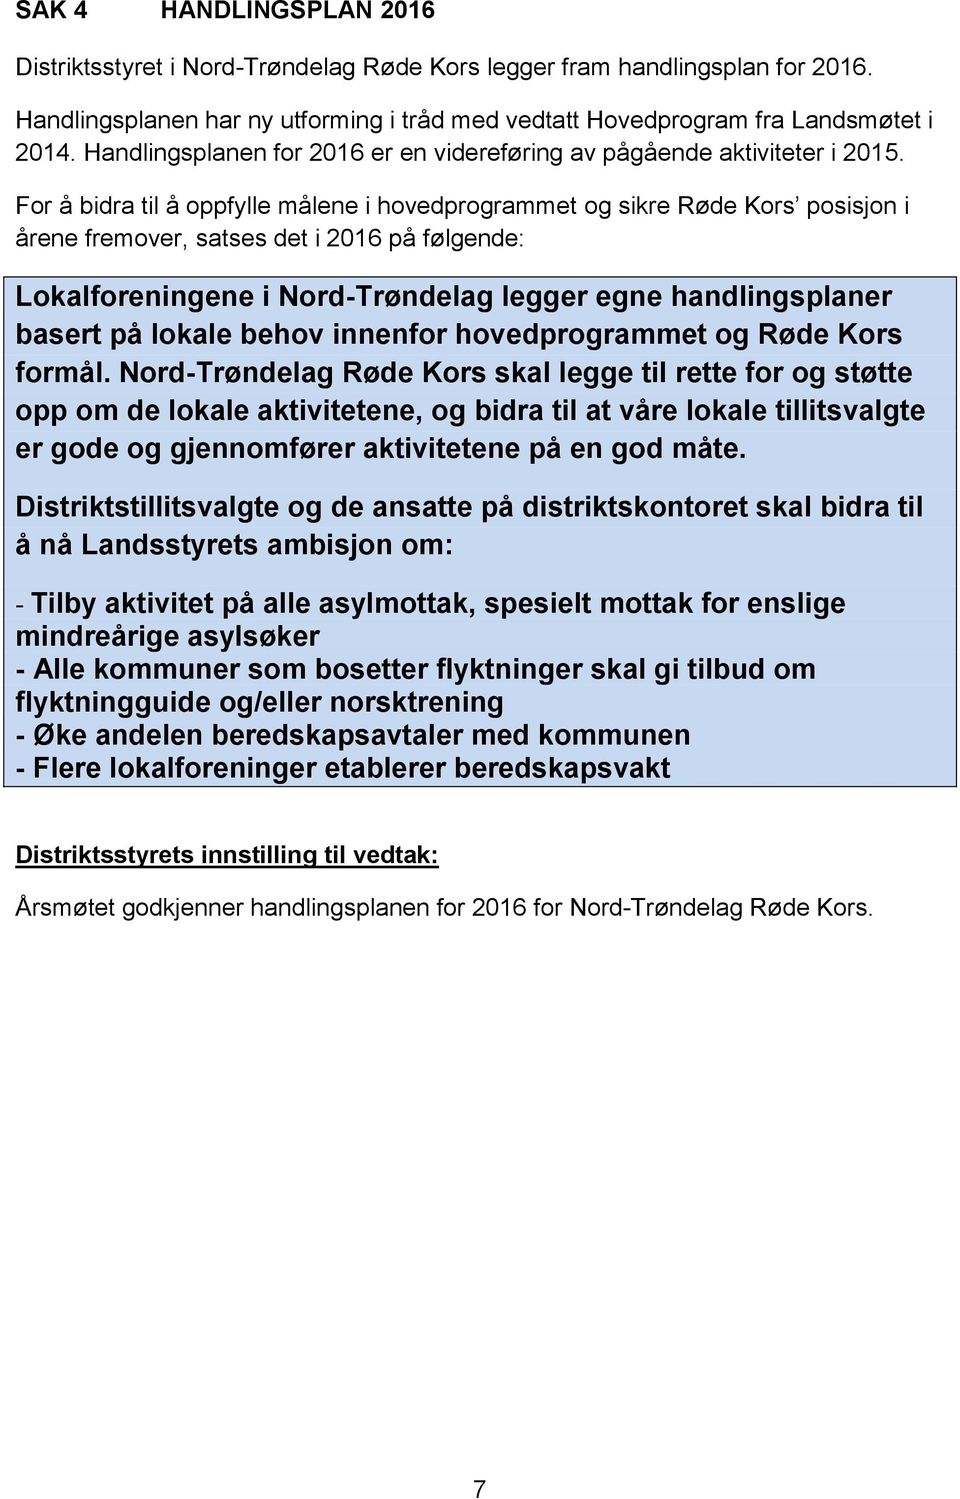 For å bidra til å oppfylle målene i hovedprogrammet og sikre Røde Kors posisjon i årene fremover, satses det i 2016 på følgende: Lokalforeningene i Nord-Trøndelag legger egne handlingsplaner basert